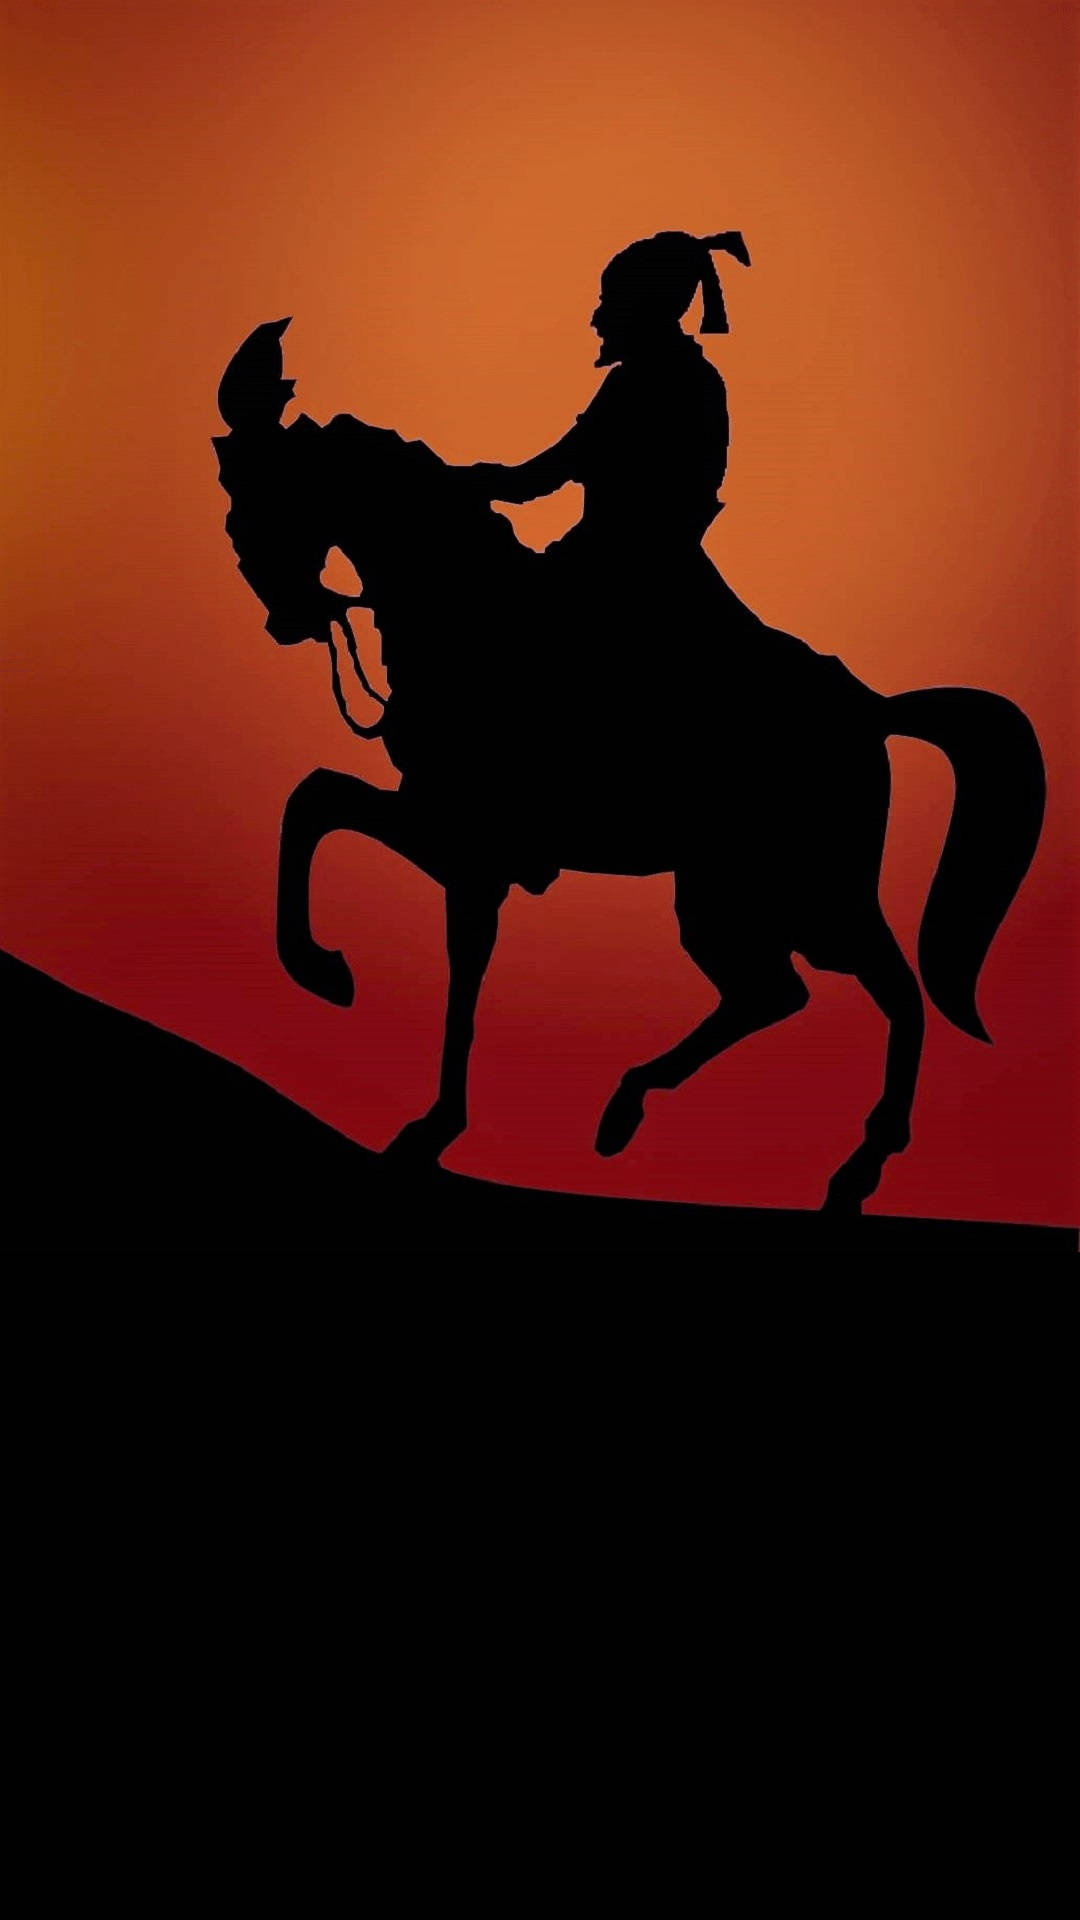 Shivaji Maharaj Riding Horse Uphill Hd